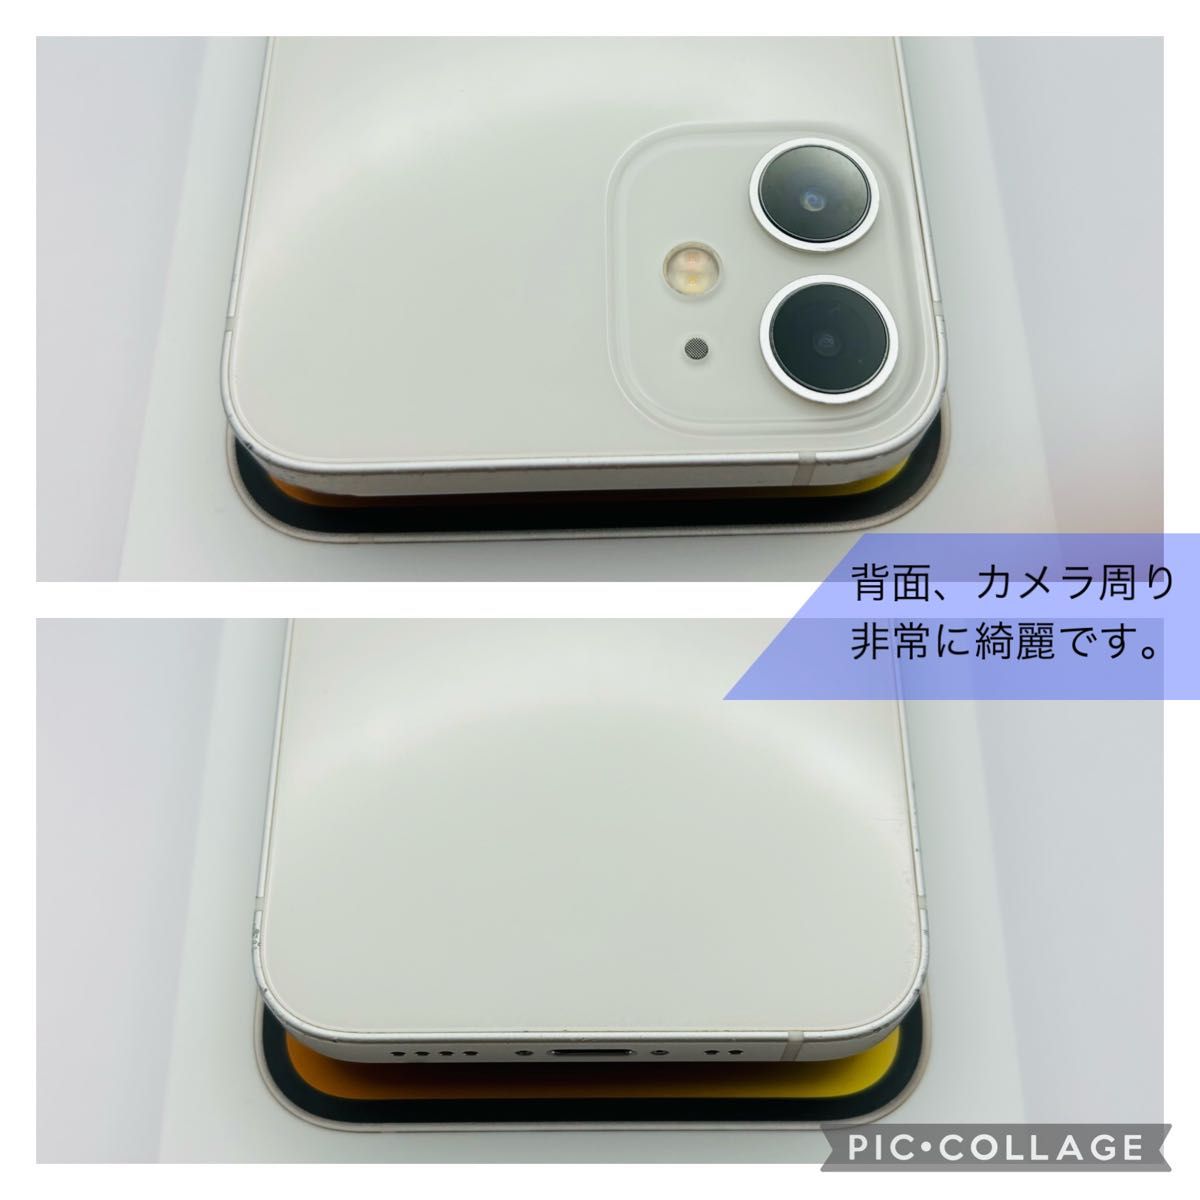 【コスパ○】iPhone12 mini 64GB ホワイト SIMフリー